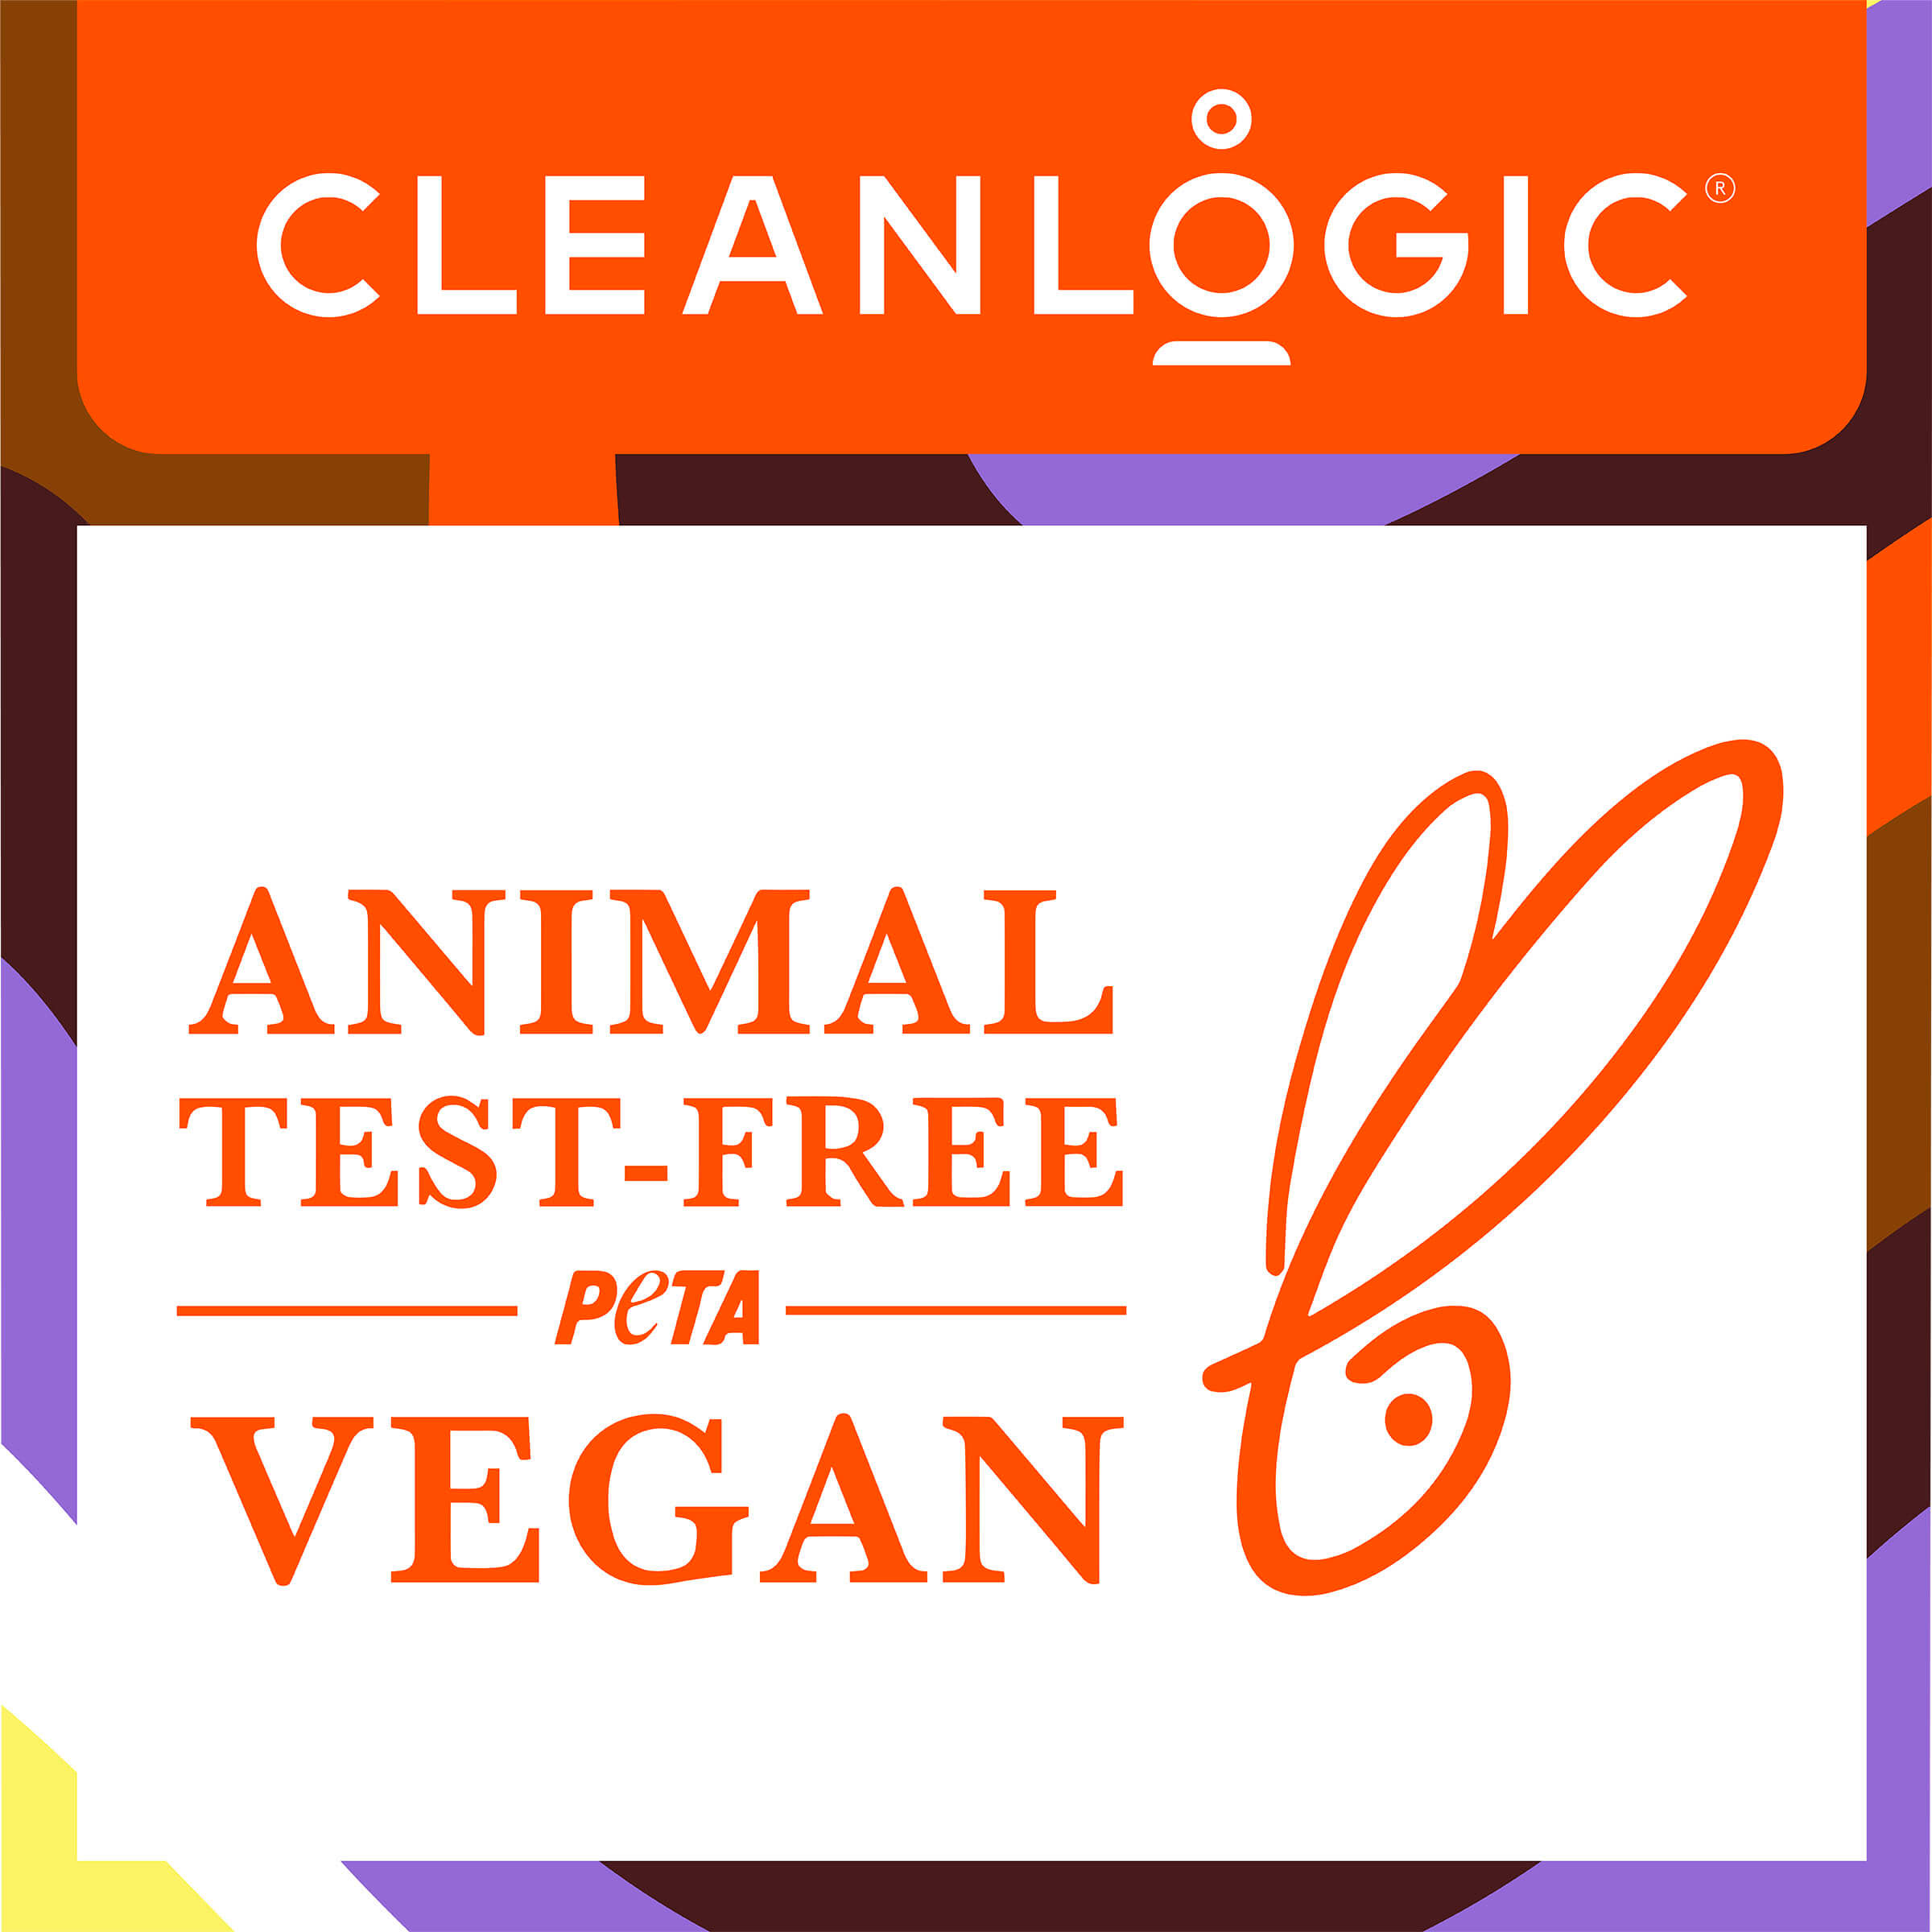 Animal Test-Free, Vegan